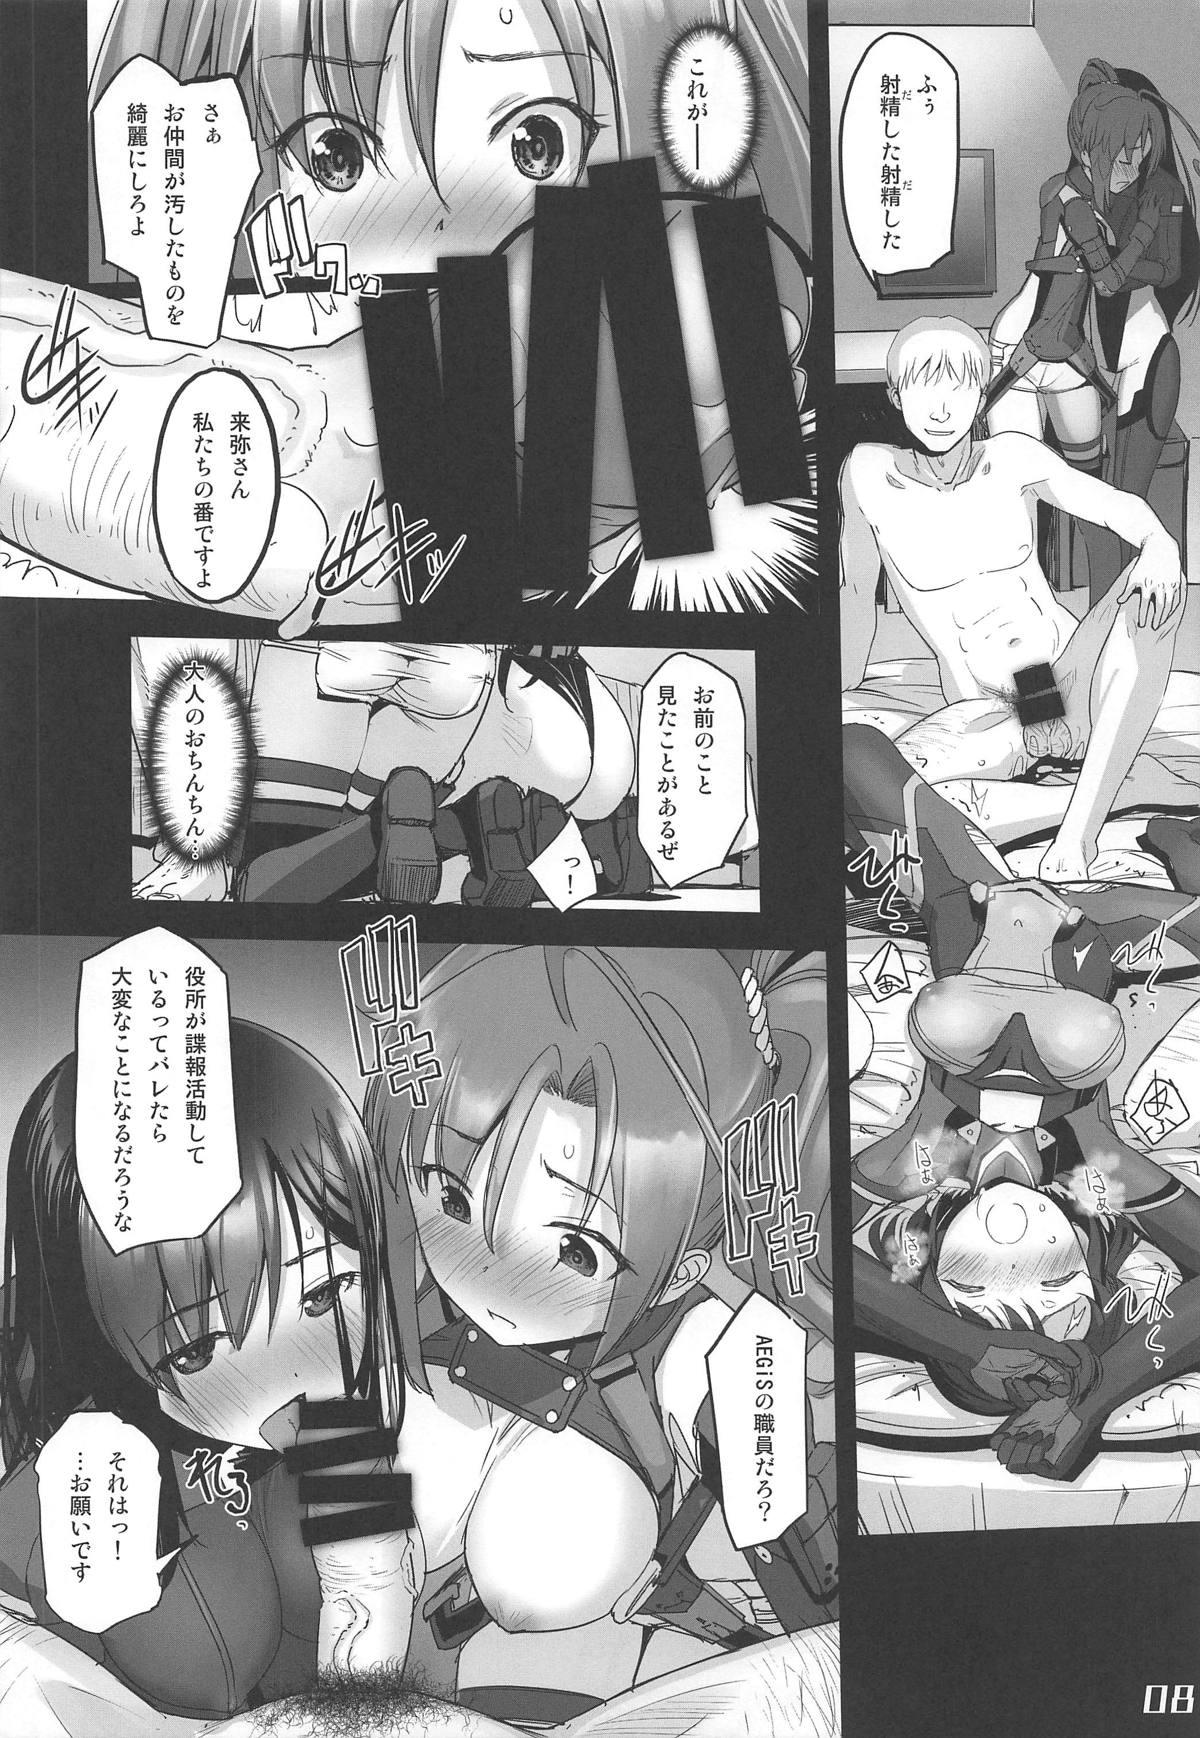 Harcore Narukozaka Seisakusho Engiroku 3 "Team: NPtS Hen" - Alice gear aegis Star - Page 7